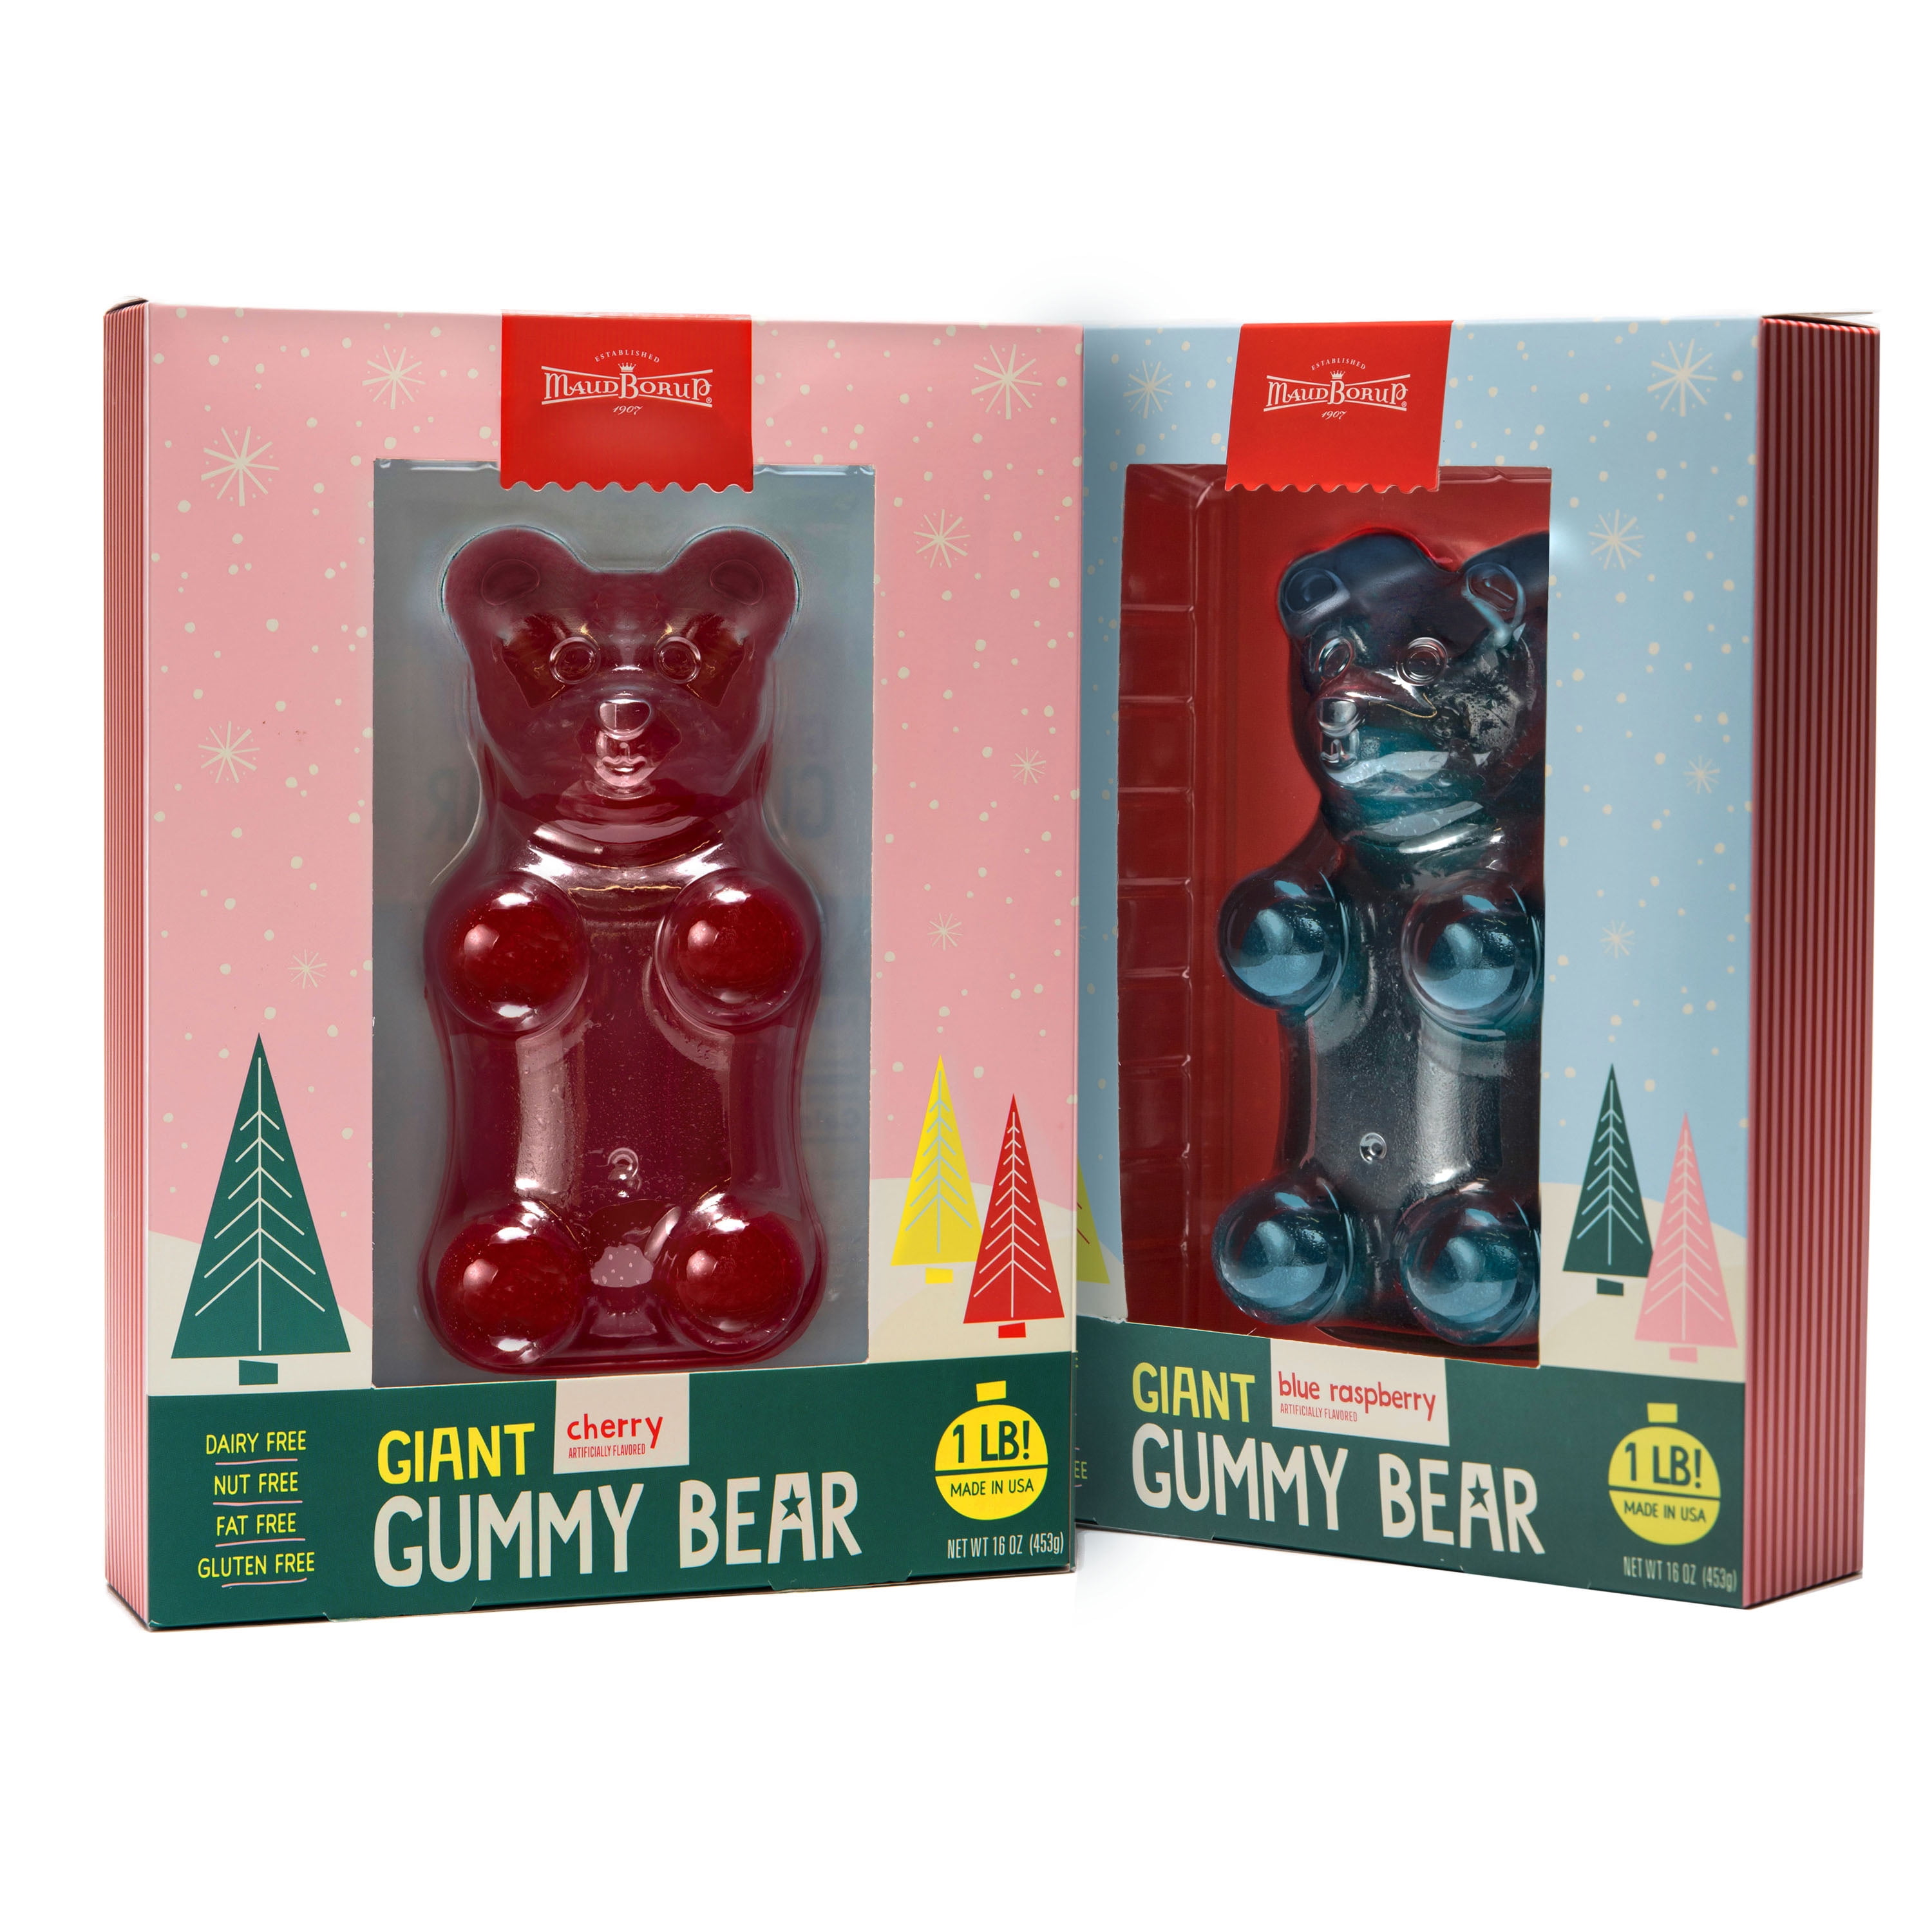 Maud Borup Giant Gummy Bear 1lb (Flavor Will Vary)